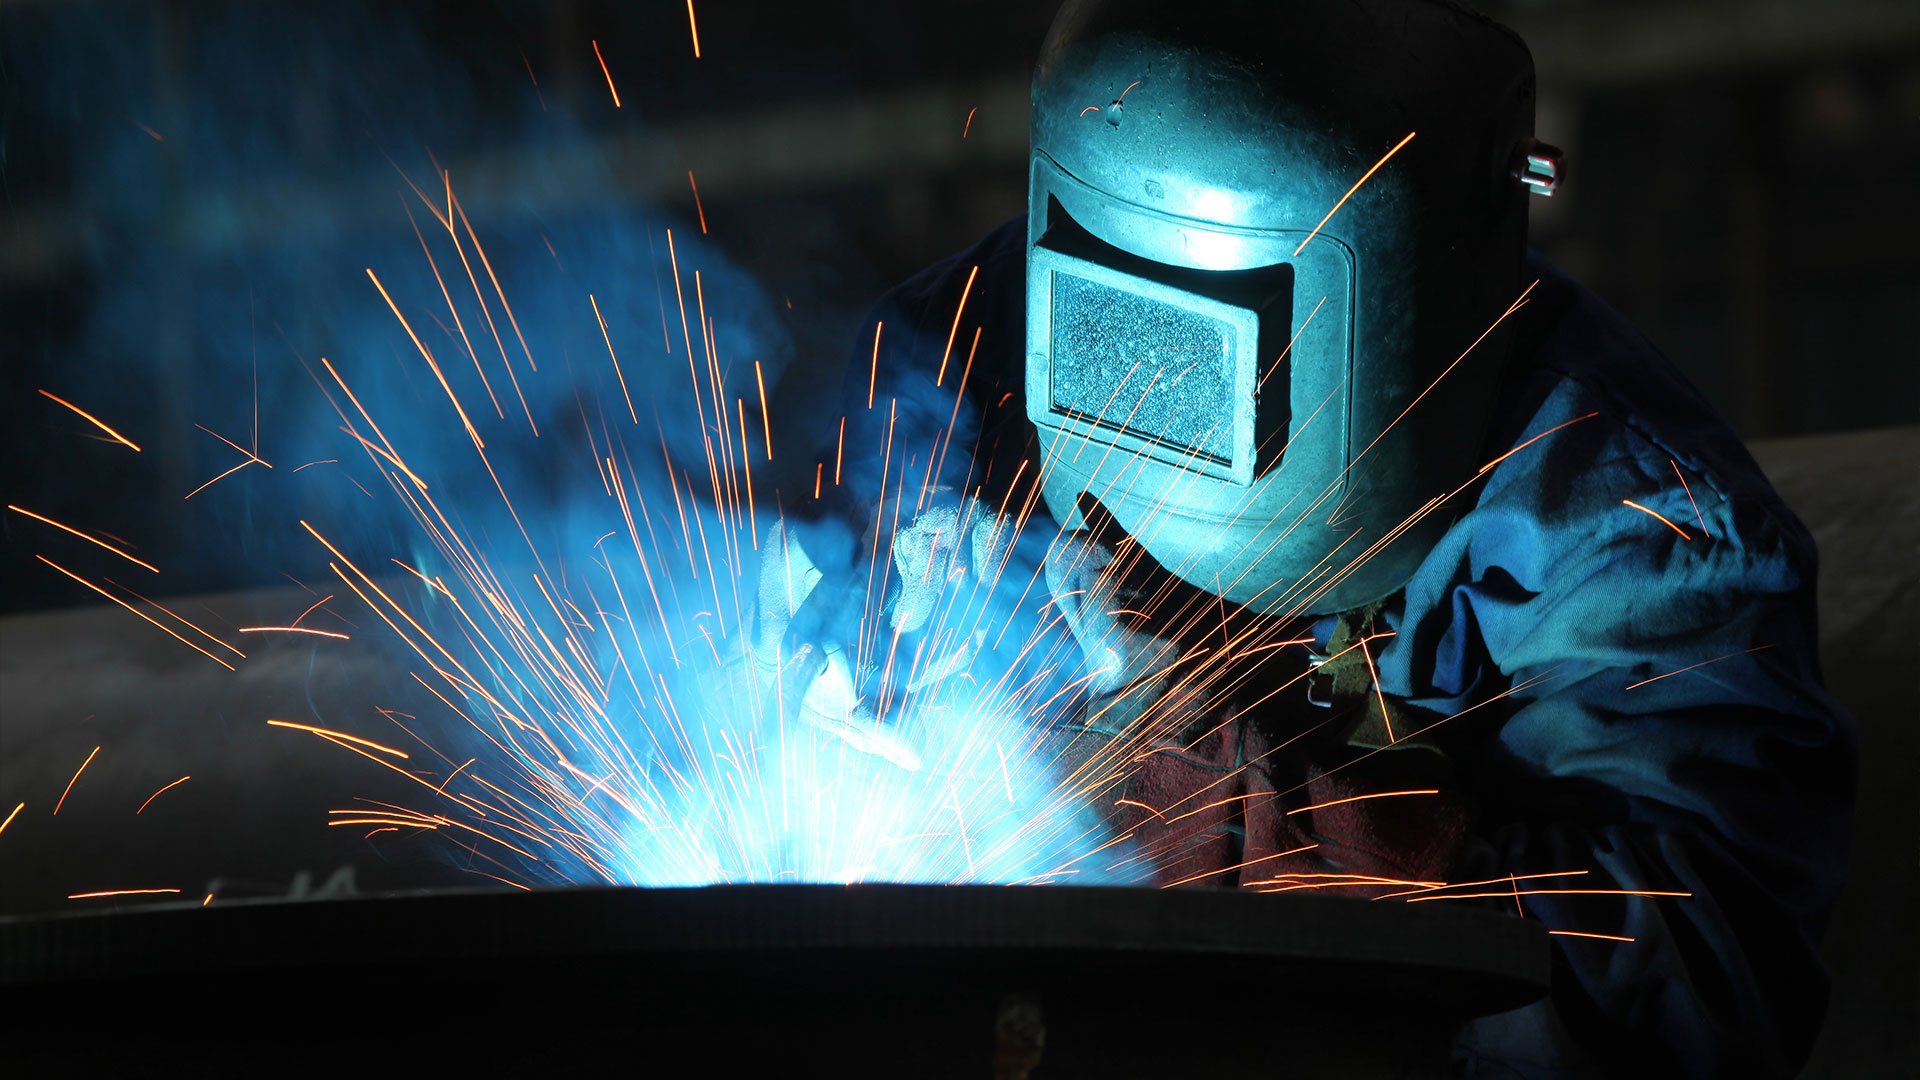 Saginaw Welder, Welding and Metal Fabrication